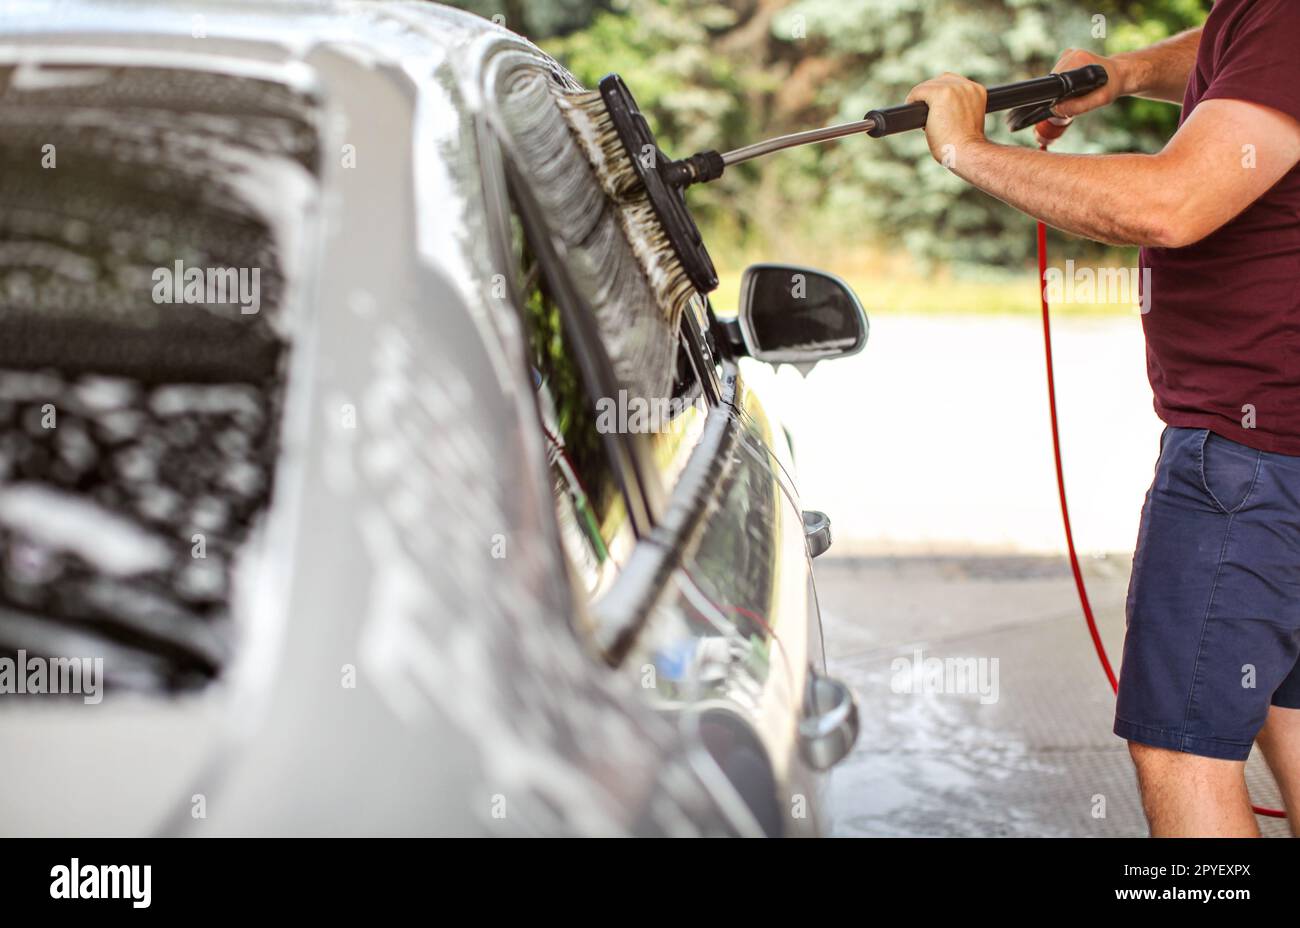 Jeune homme en short et t shirt lave sa voiture en libre service de nettoyage, lavage de vitres latérales avec pinceau. Banque D'Images